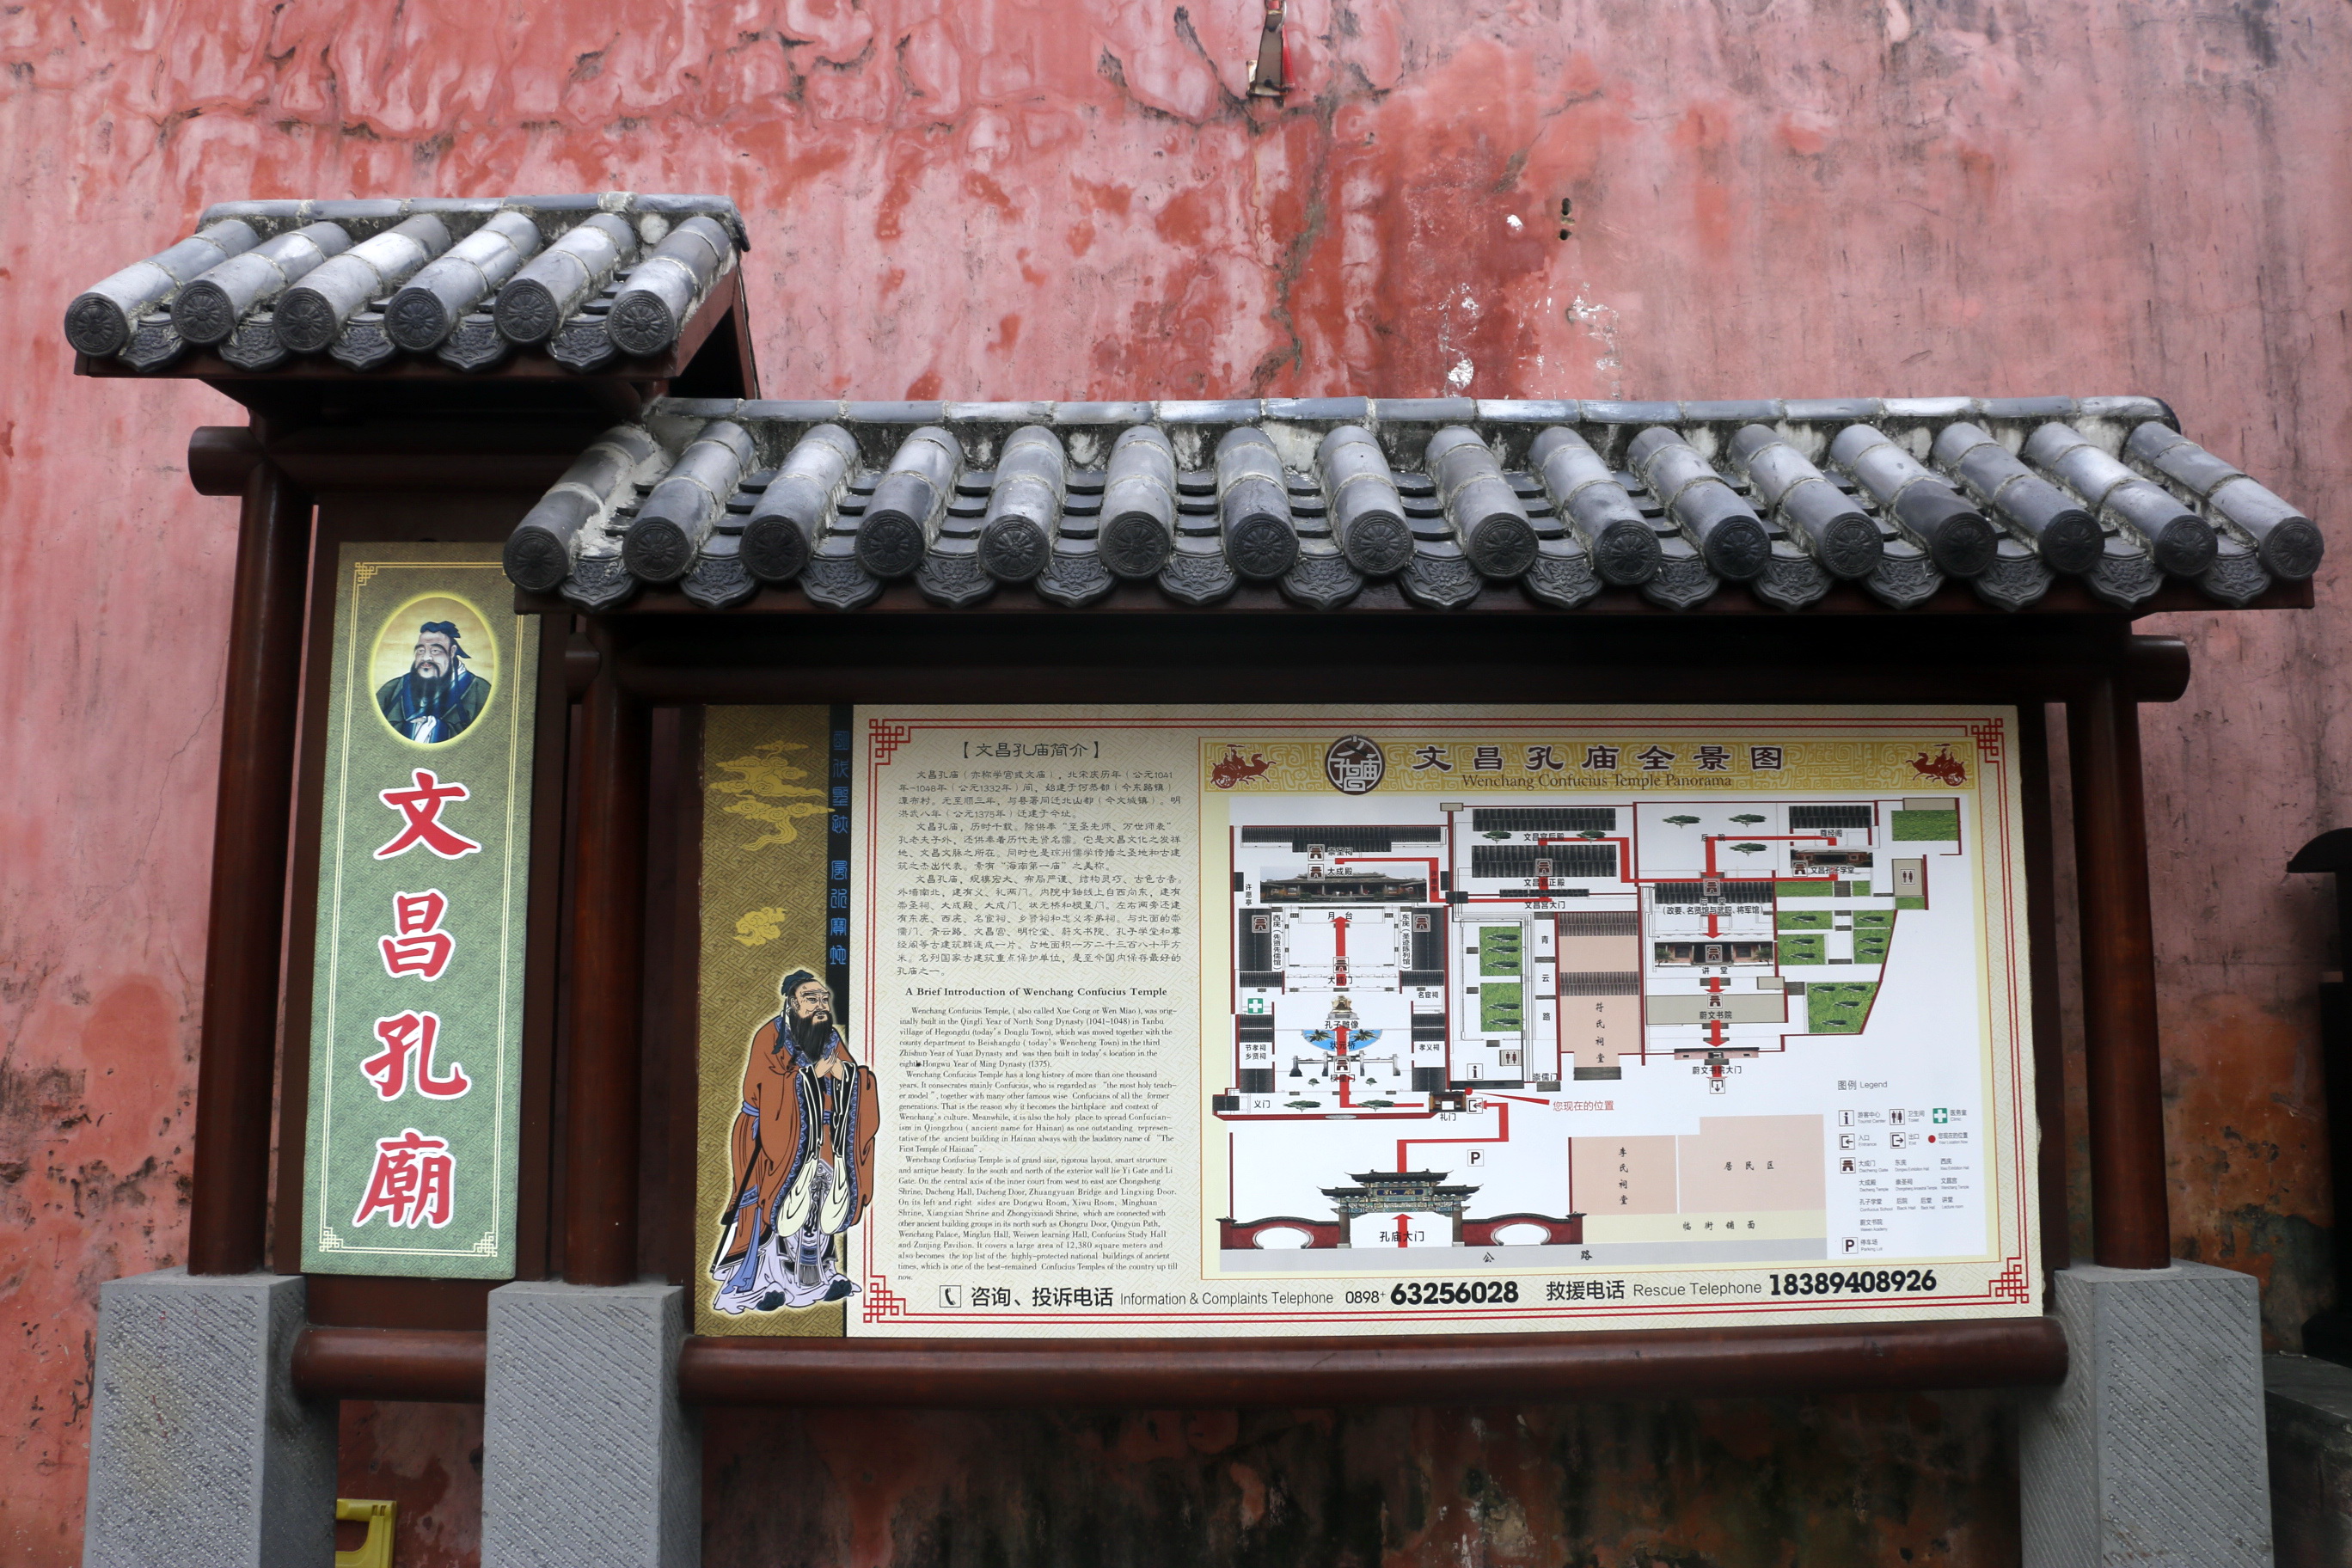 文昌孔庙地图图片